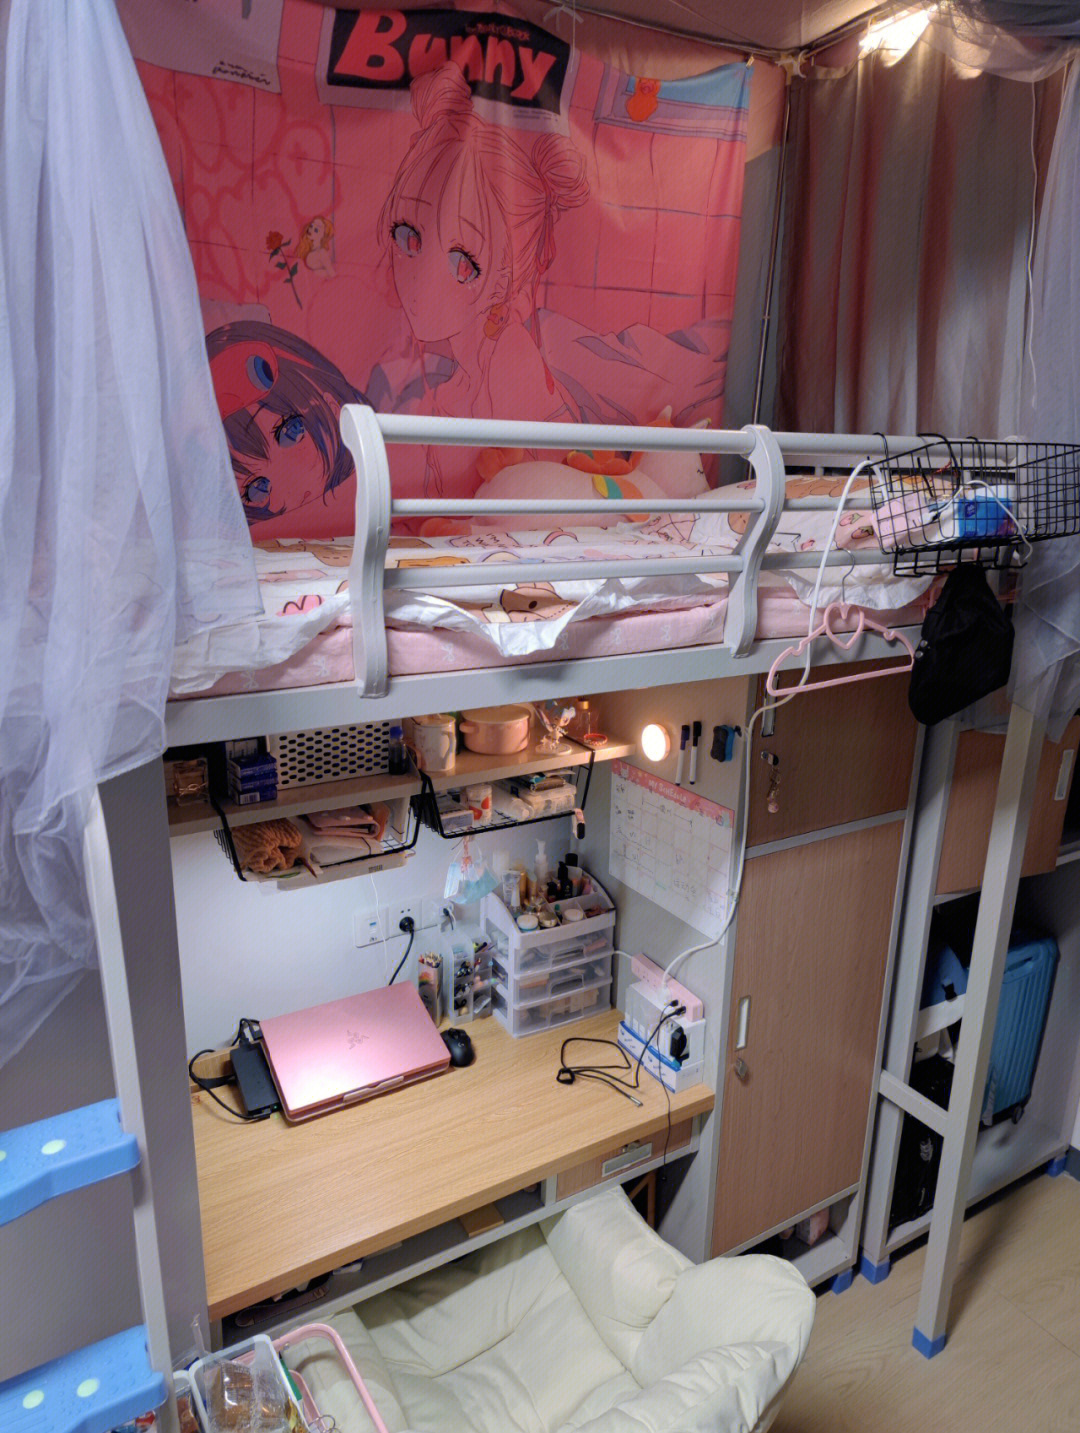 江西科技学院寝室图片图片